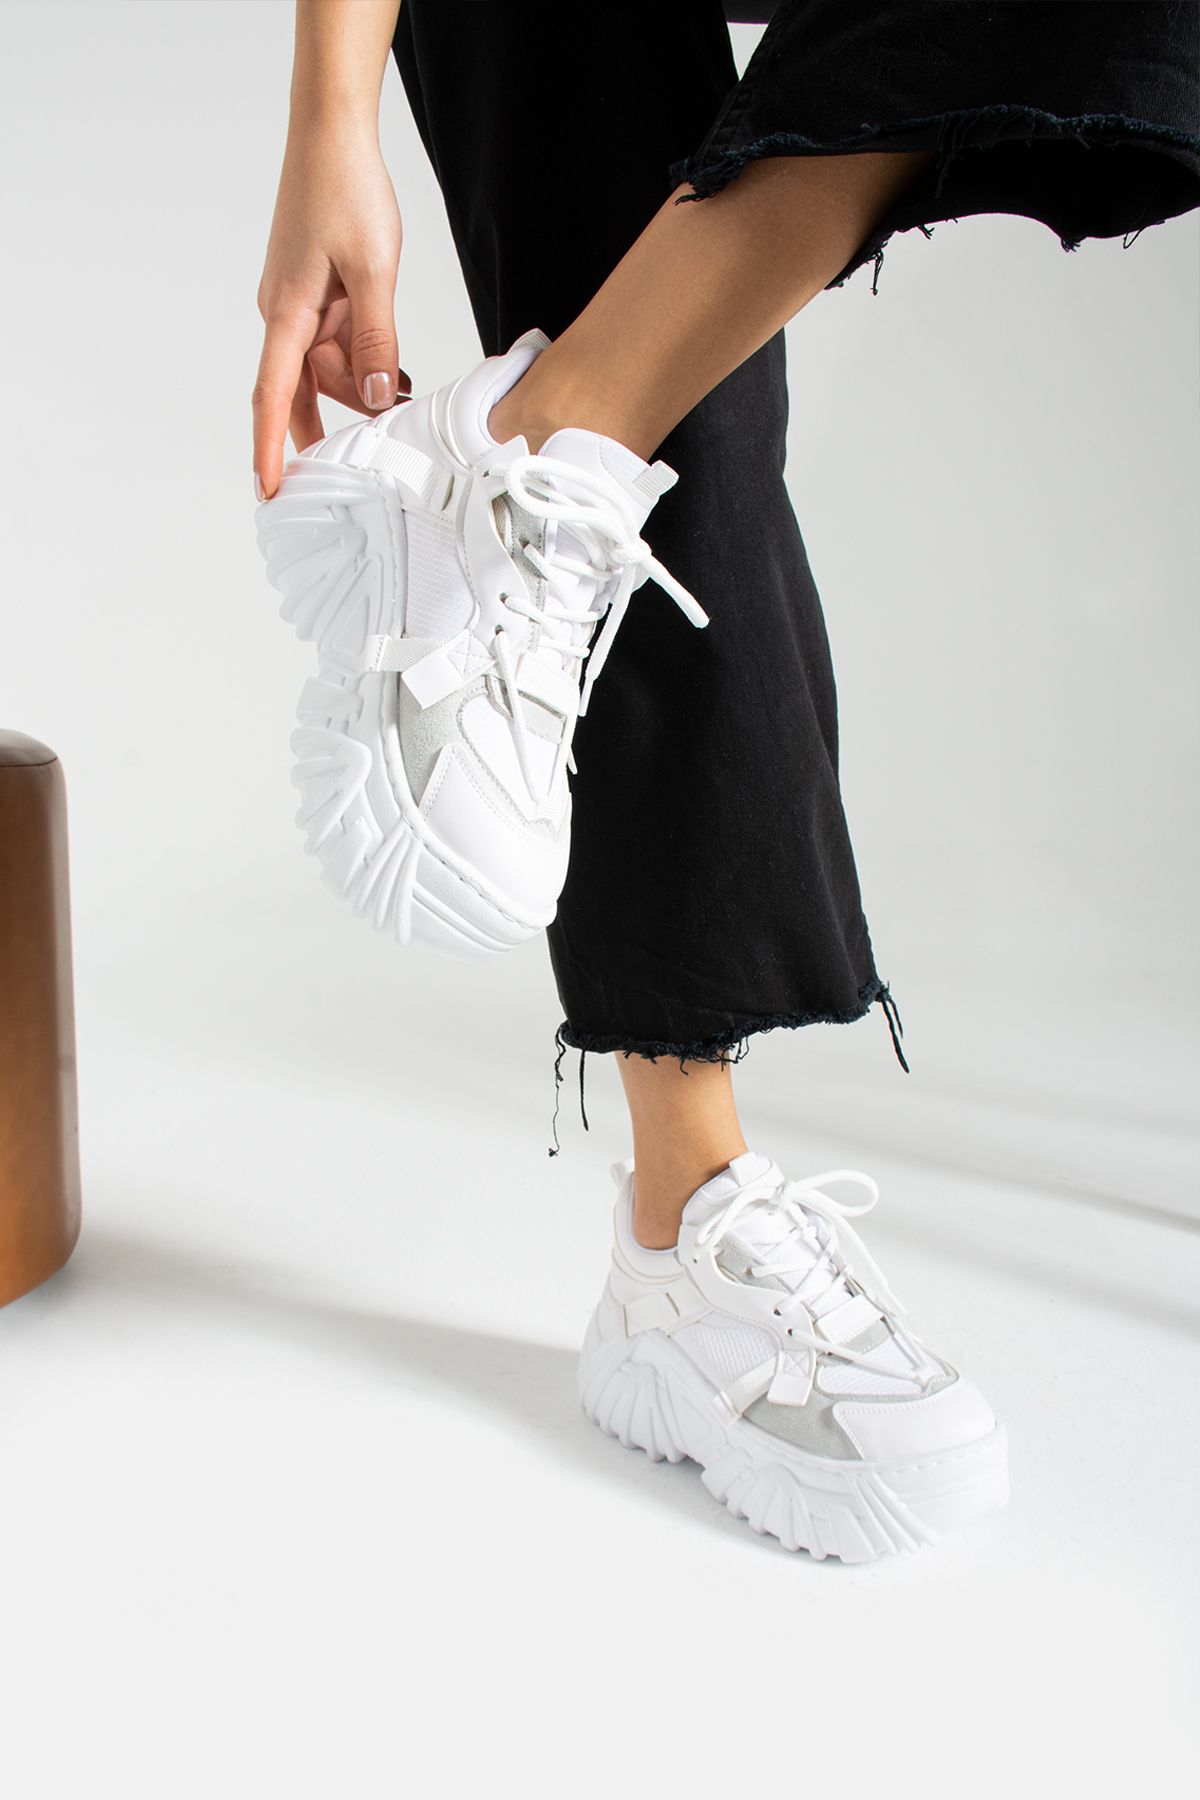 İnan Ayakkabı Kadın Beyaz Renk Yüksek Taban Sneakers & Spor Ayakkabı (TABAN BOYU 9 CM)